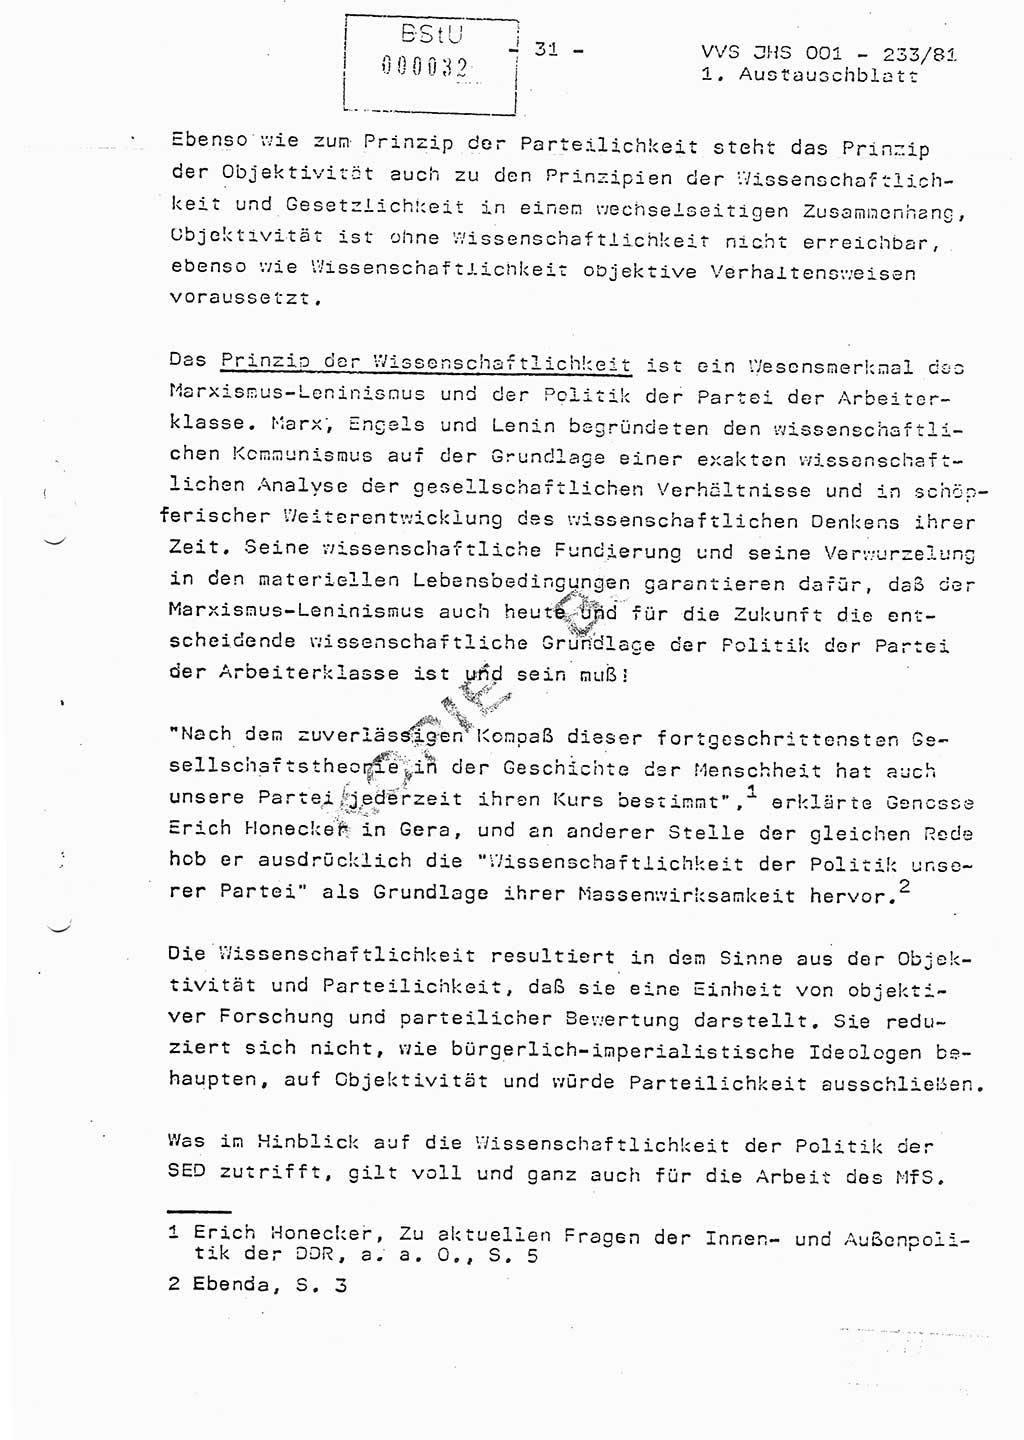 Dissertation Oberstleutnant Horst Zank (JHS), Oberstleutnant Dr. Karl-Heinz Knoblauch (JHS), Oberstleutnant Gustav-Adolf Kowalewski (HA Ⅸ), Oberstleutnant Wolfgang Plötner (HA Ⅸ), Ministerium für Staatssicherheit (MfS) [Deutsche Demokratische Republik (DDR)], Juristische Hochschule (JHS), Vertrauliche Verschlußsache (VVS) o001-233/81, Potsdam 1981, Blatt 32 (Diss. MfS DDR JHS VVS o001-233/81 1981, Bl. 32)